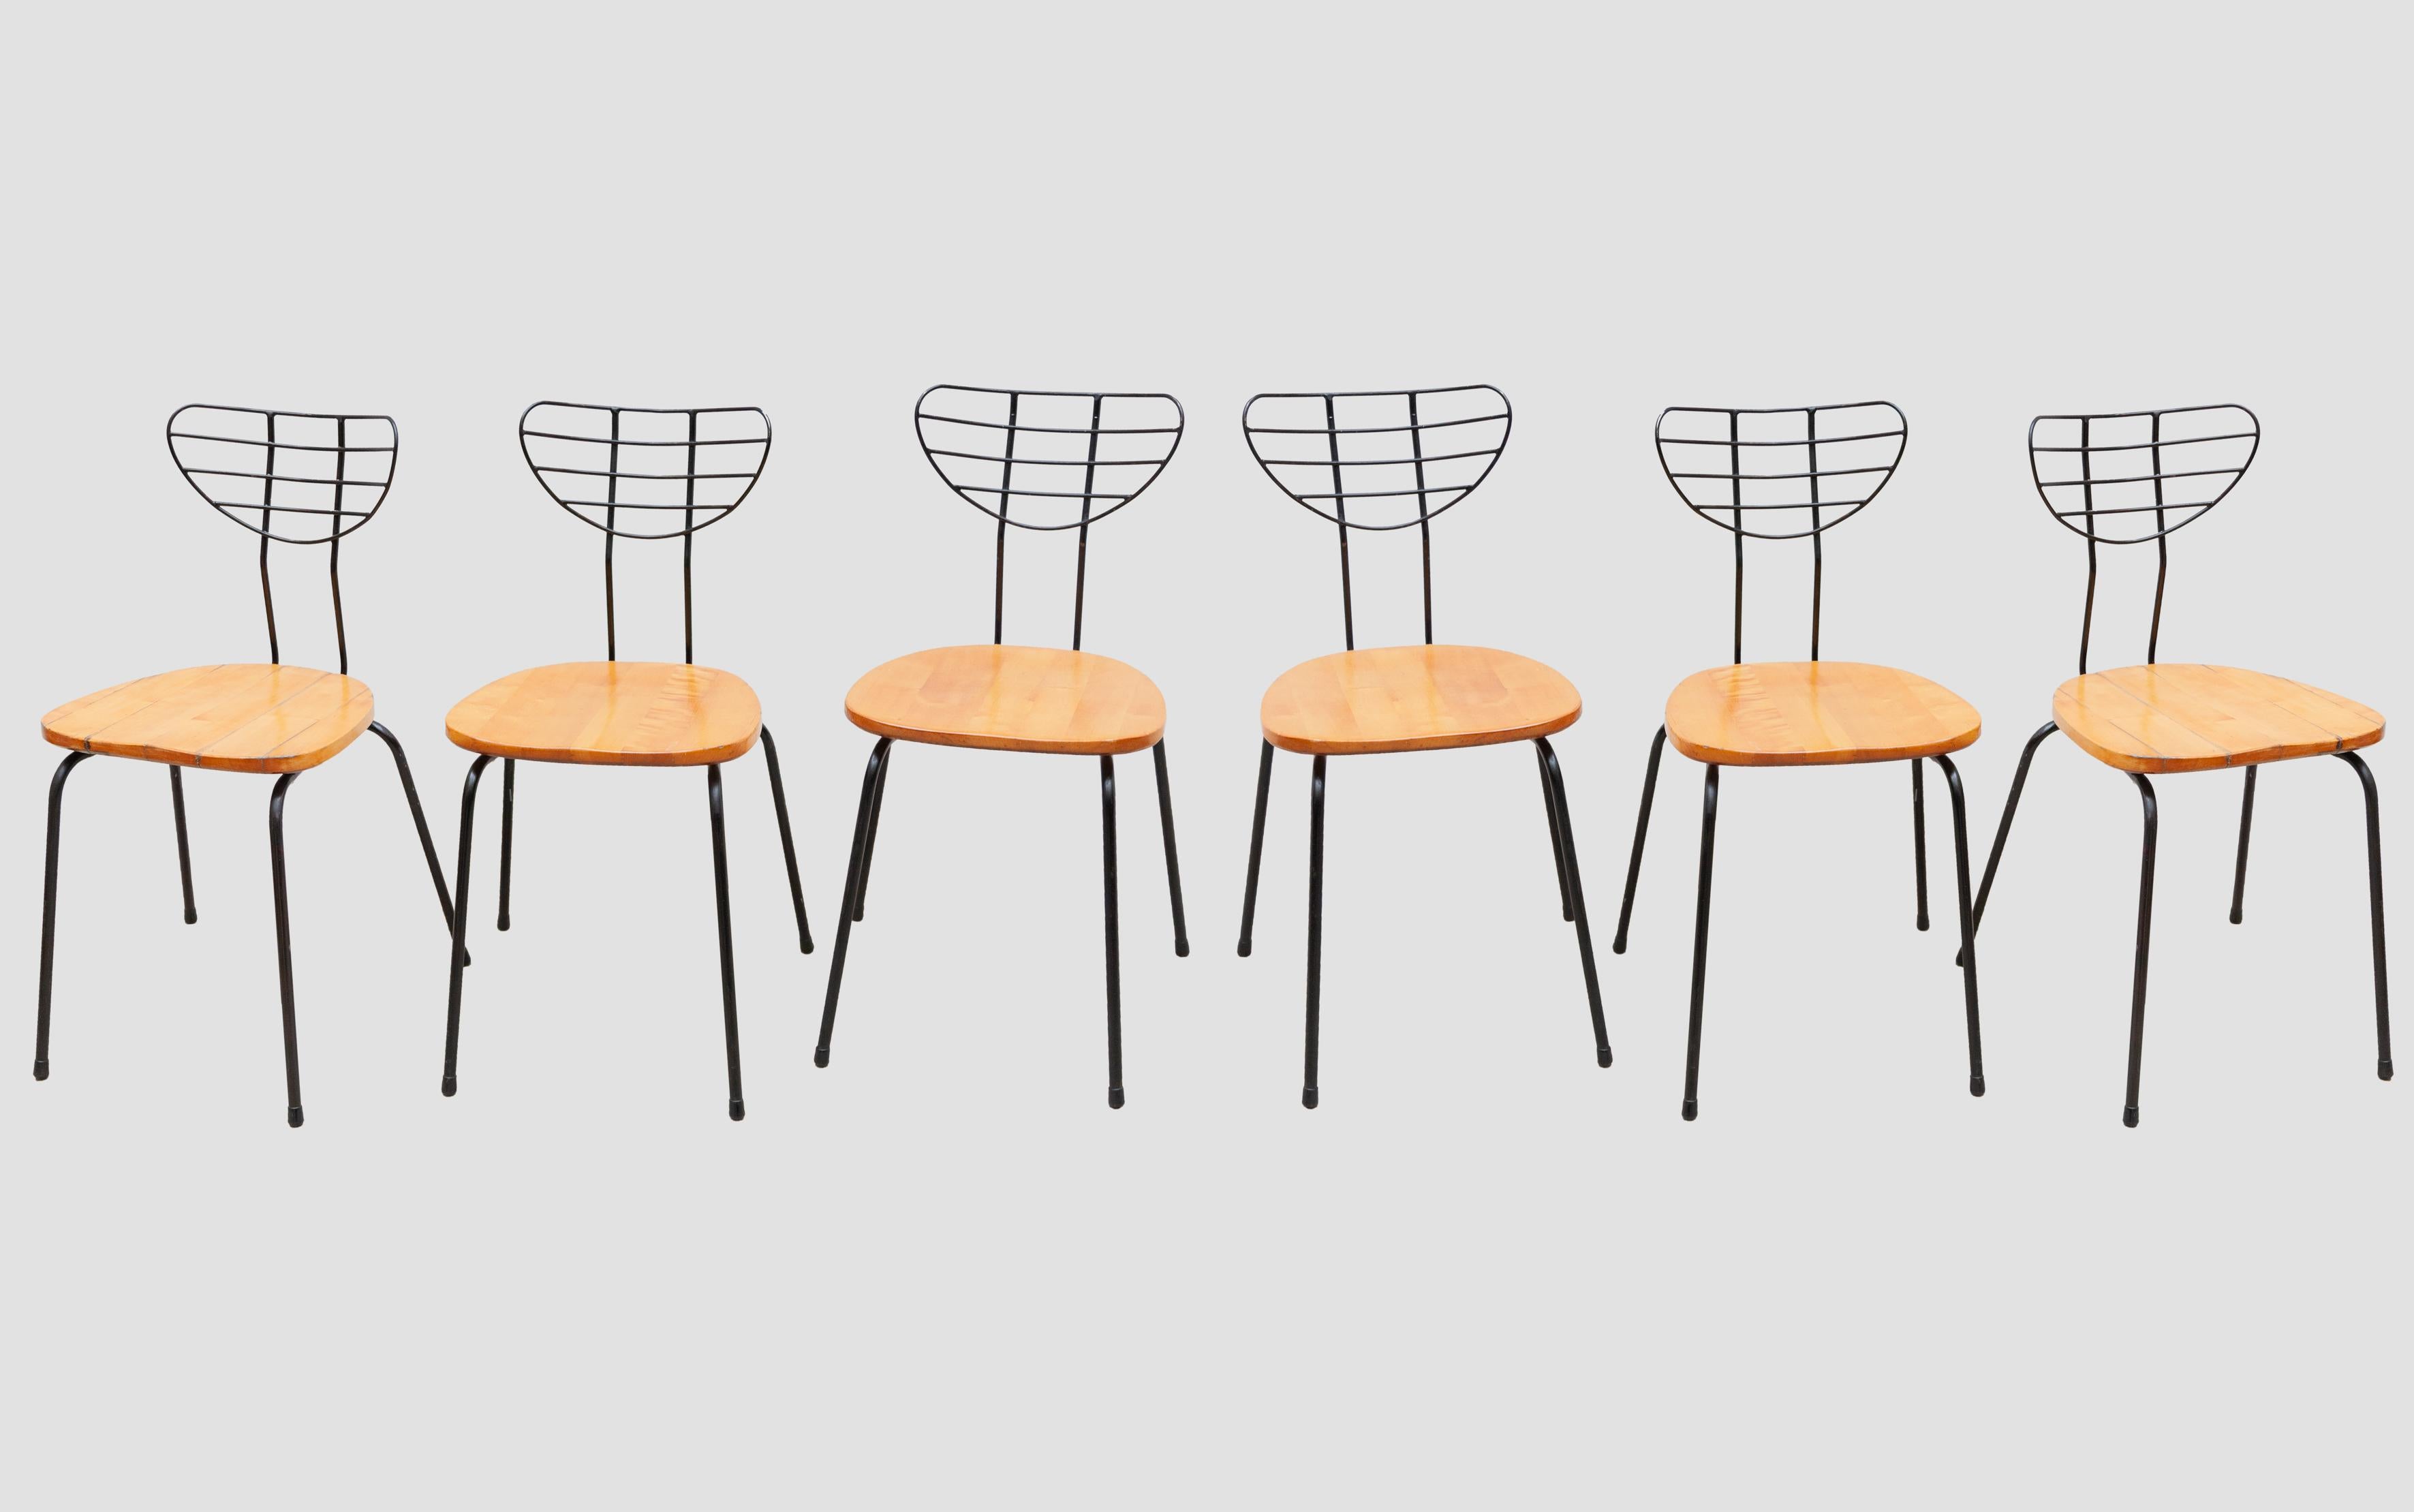 Satz von sechs Radar-Stühlen des belgischen Designers Willy Van Der Meeren für Tubax, Belgien, 1950er Jahre. Stühle aus schwarz lackiertem Metallgestell mit lackierten Holzsitzen, Sitzhöhe 44 cm. Die Beine haben schwarze Gummiaufnahmen. Hergestellt